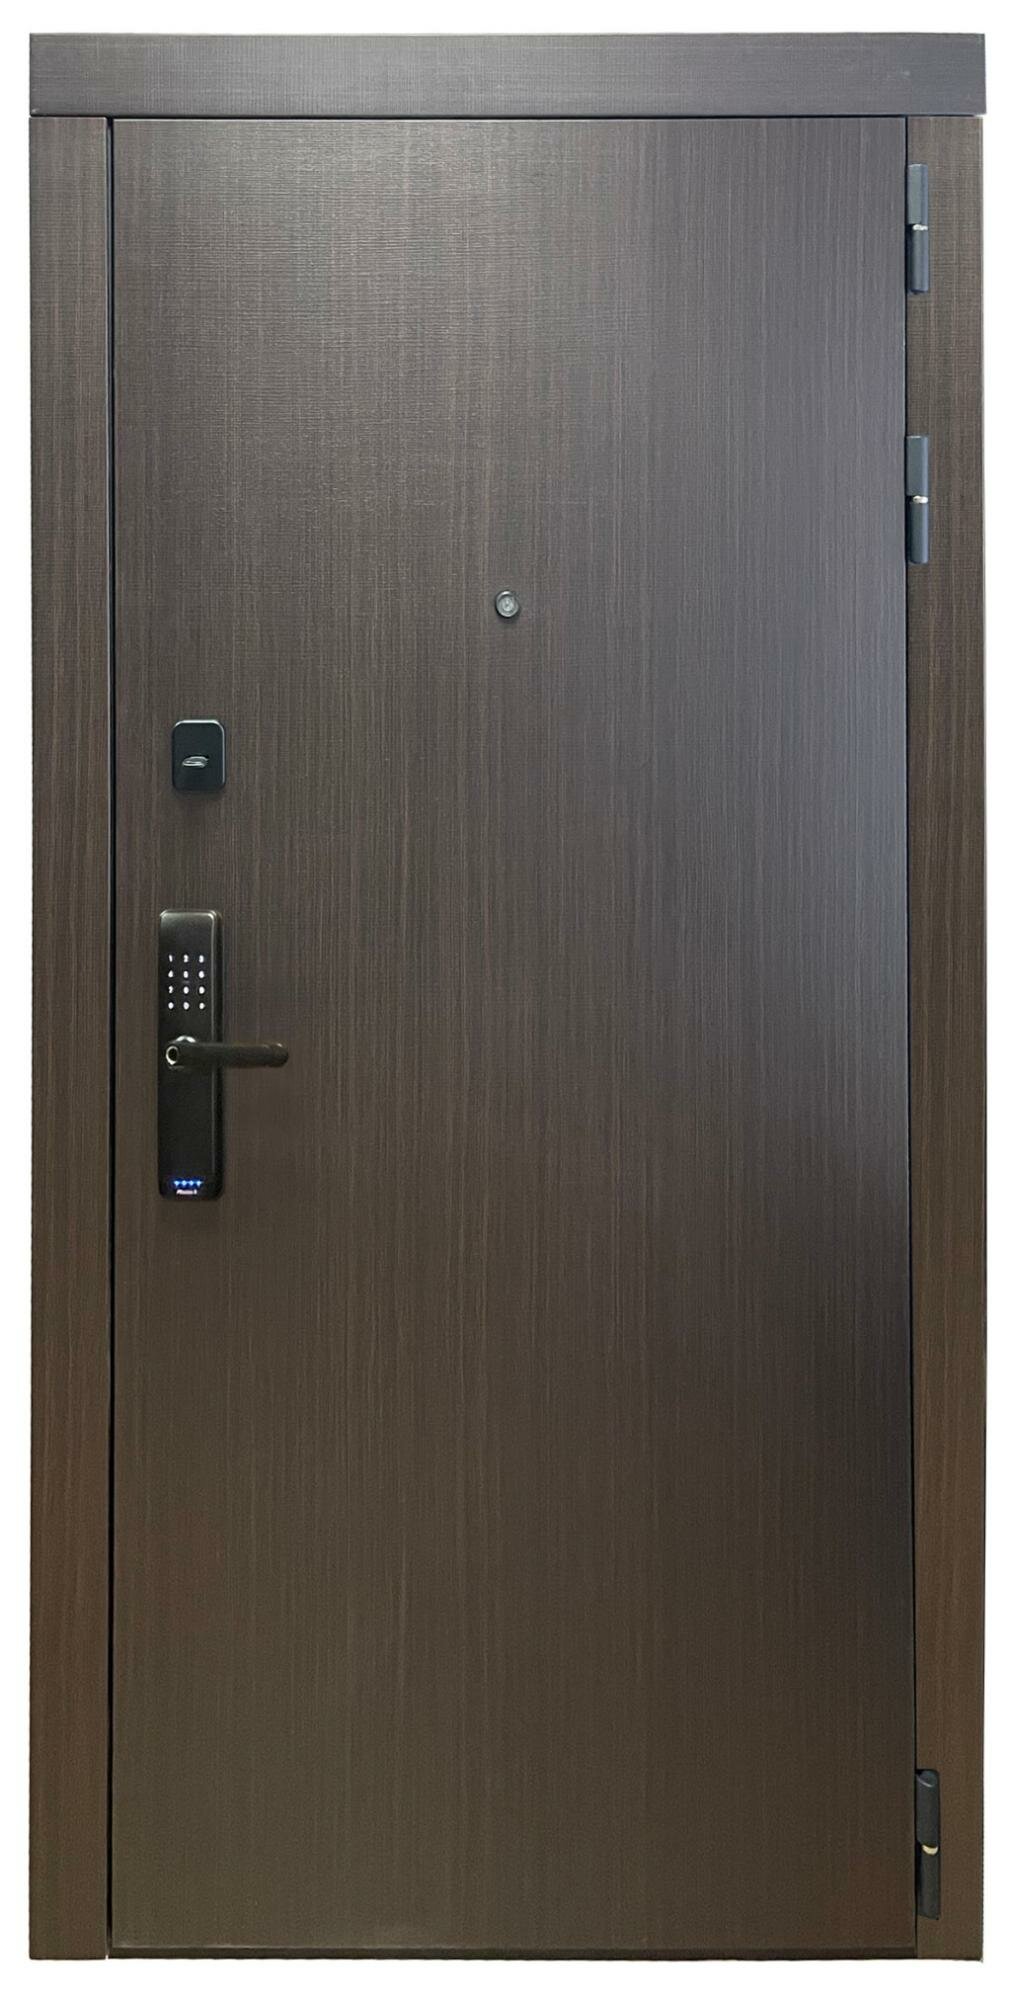 Электронные замки на двери баяр Входная дверь с отпечатком пальца баяр 715 Левая - фотография № 1